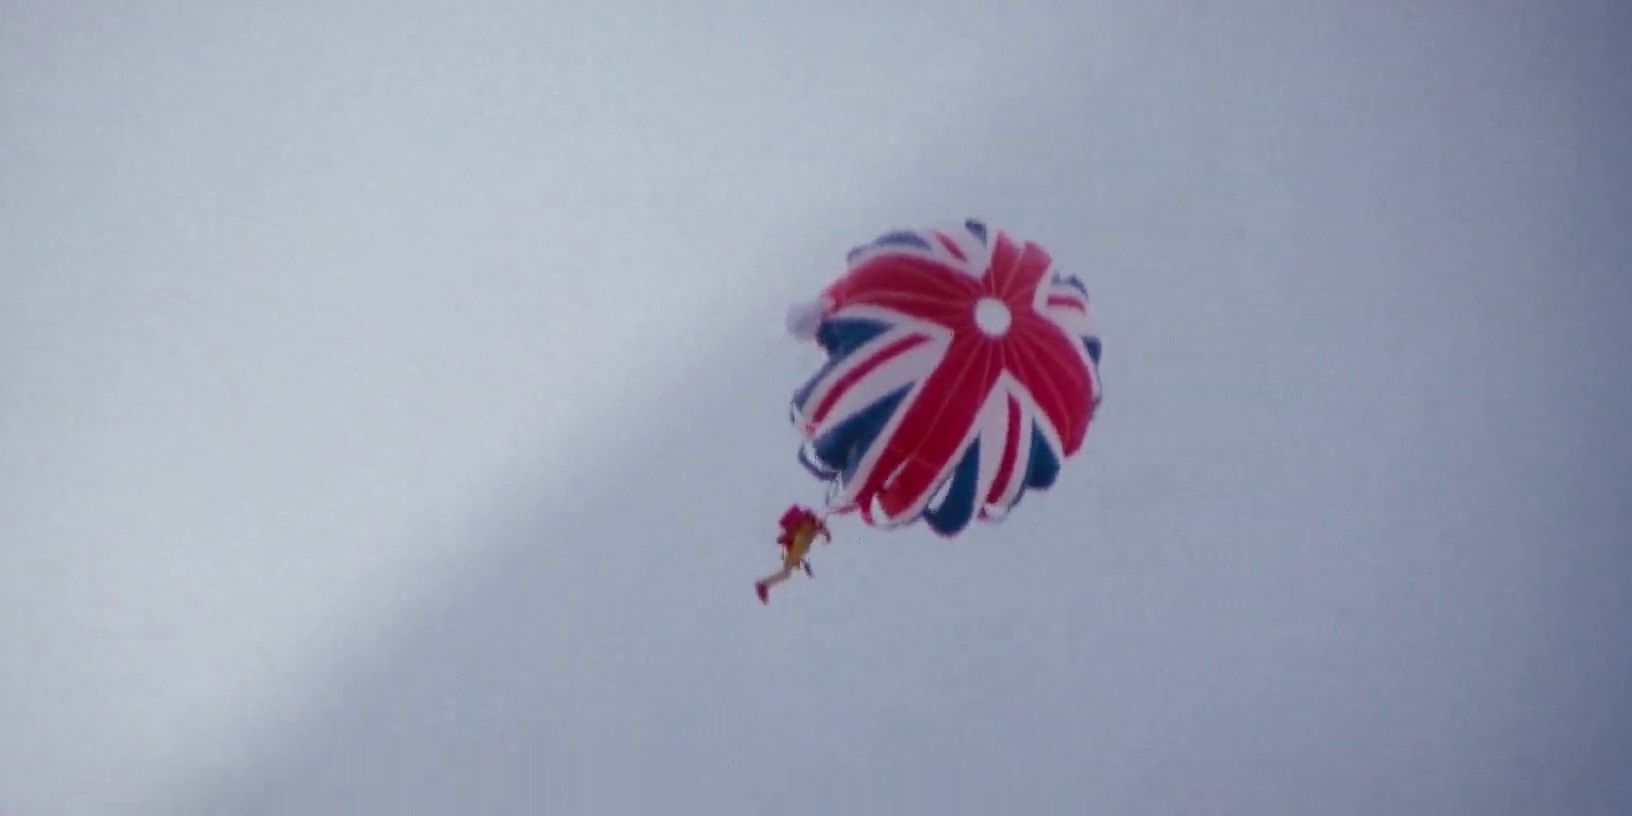 O salto de paraquedas de James Bond em The Spy Who Loved Me